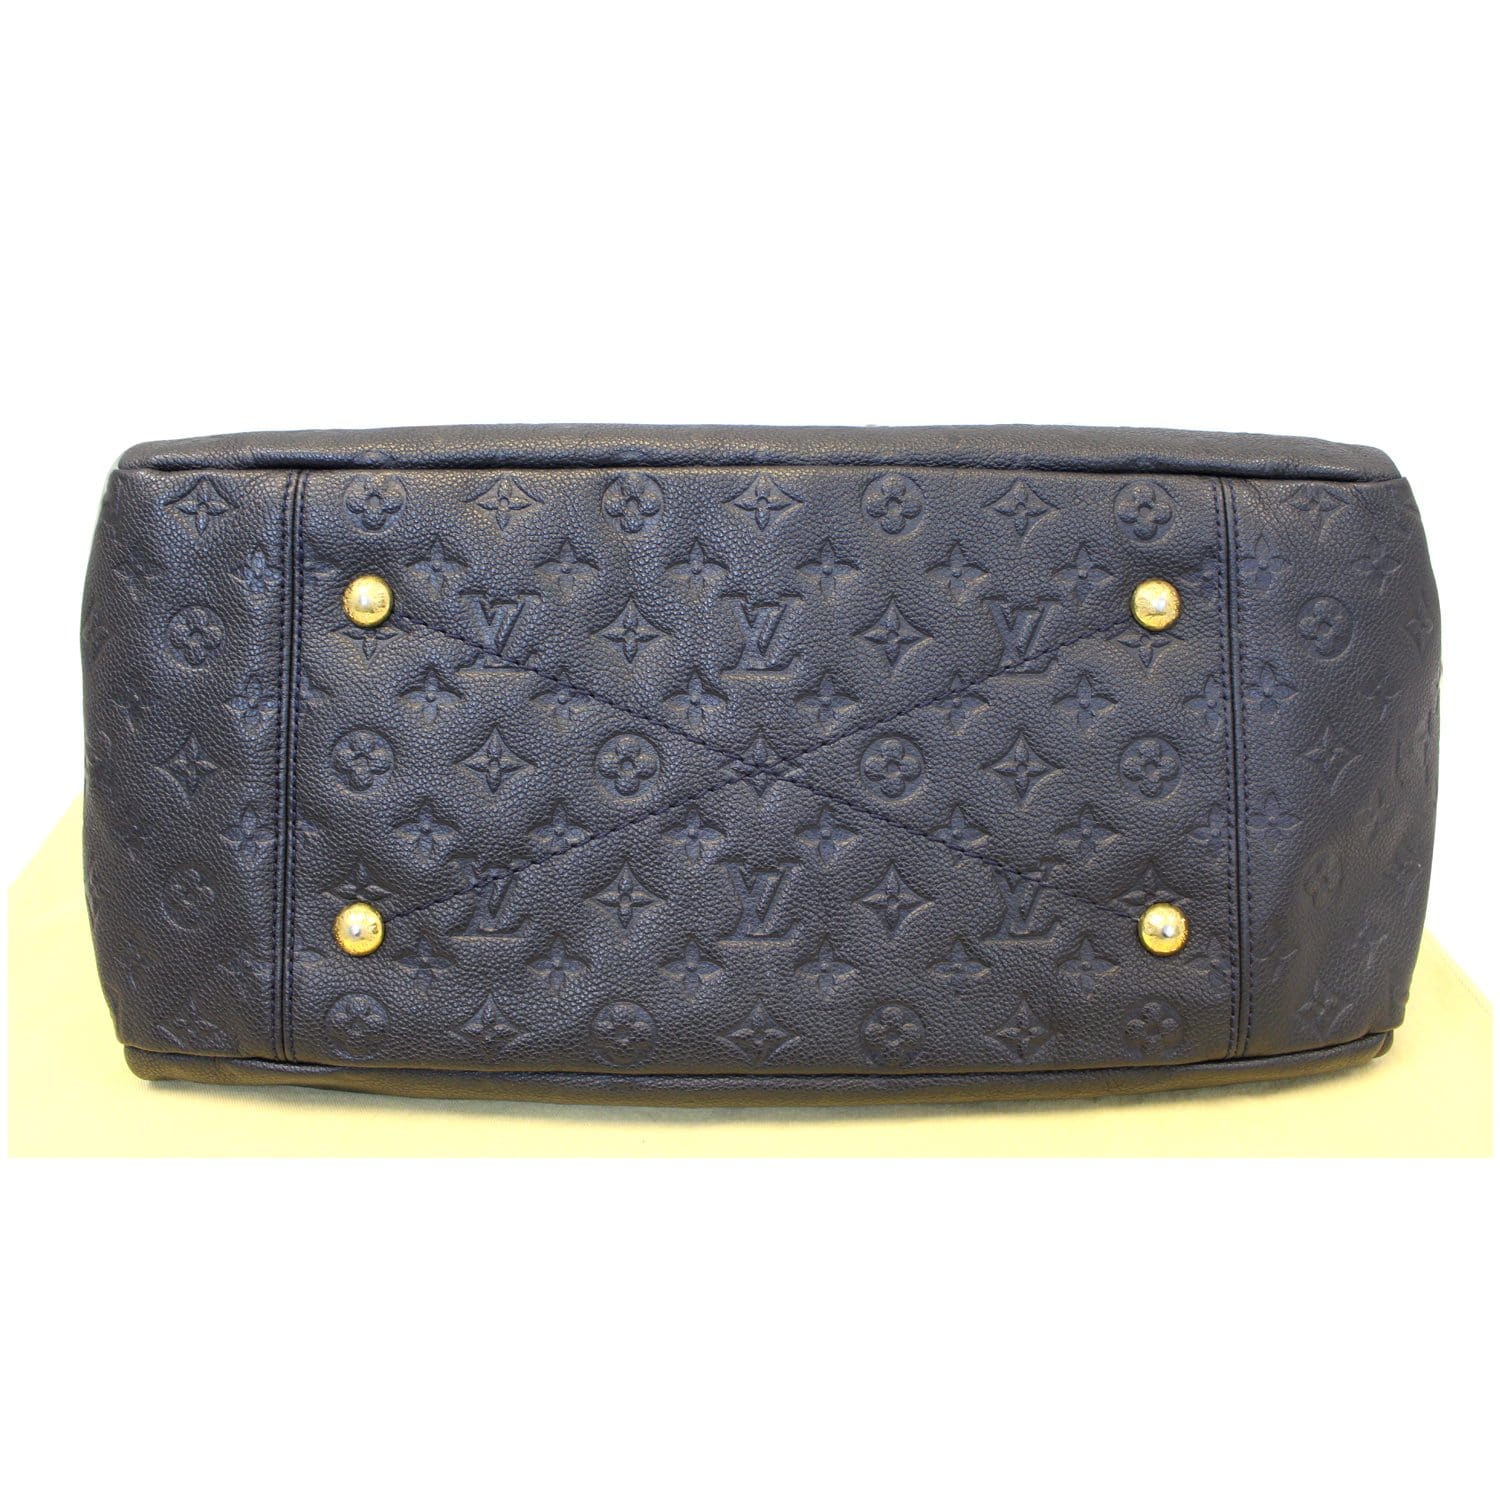 Louis Vuitton ​Monogram Empreinte Leather Shoulder Bag on SALE